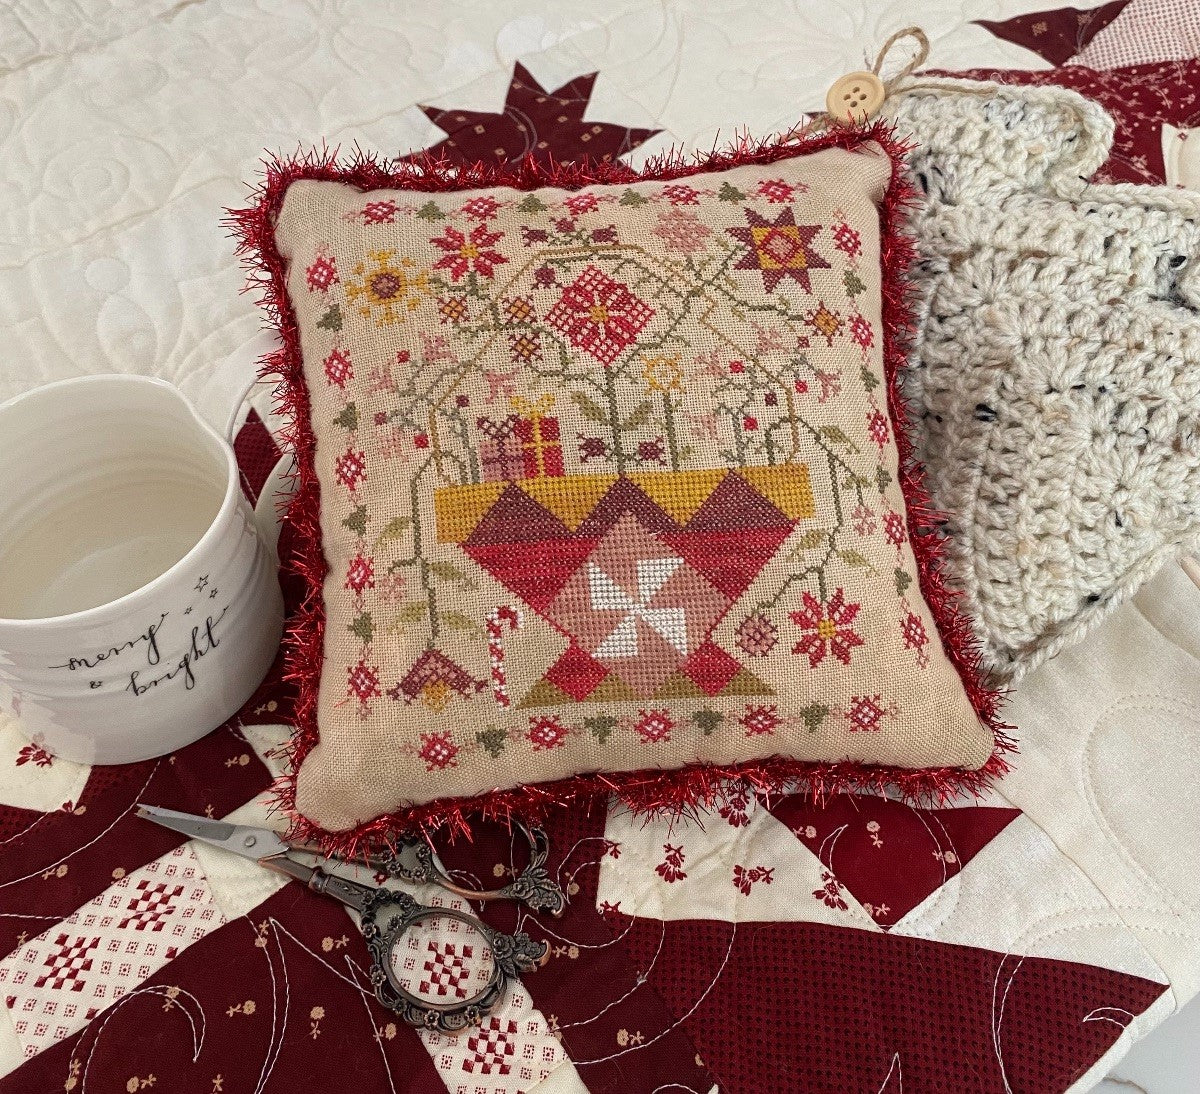 Betsy's Christmas Basket - Cross stitch pattern by Pansy Patch